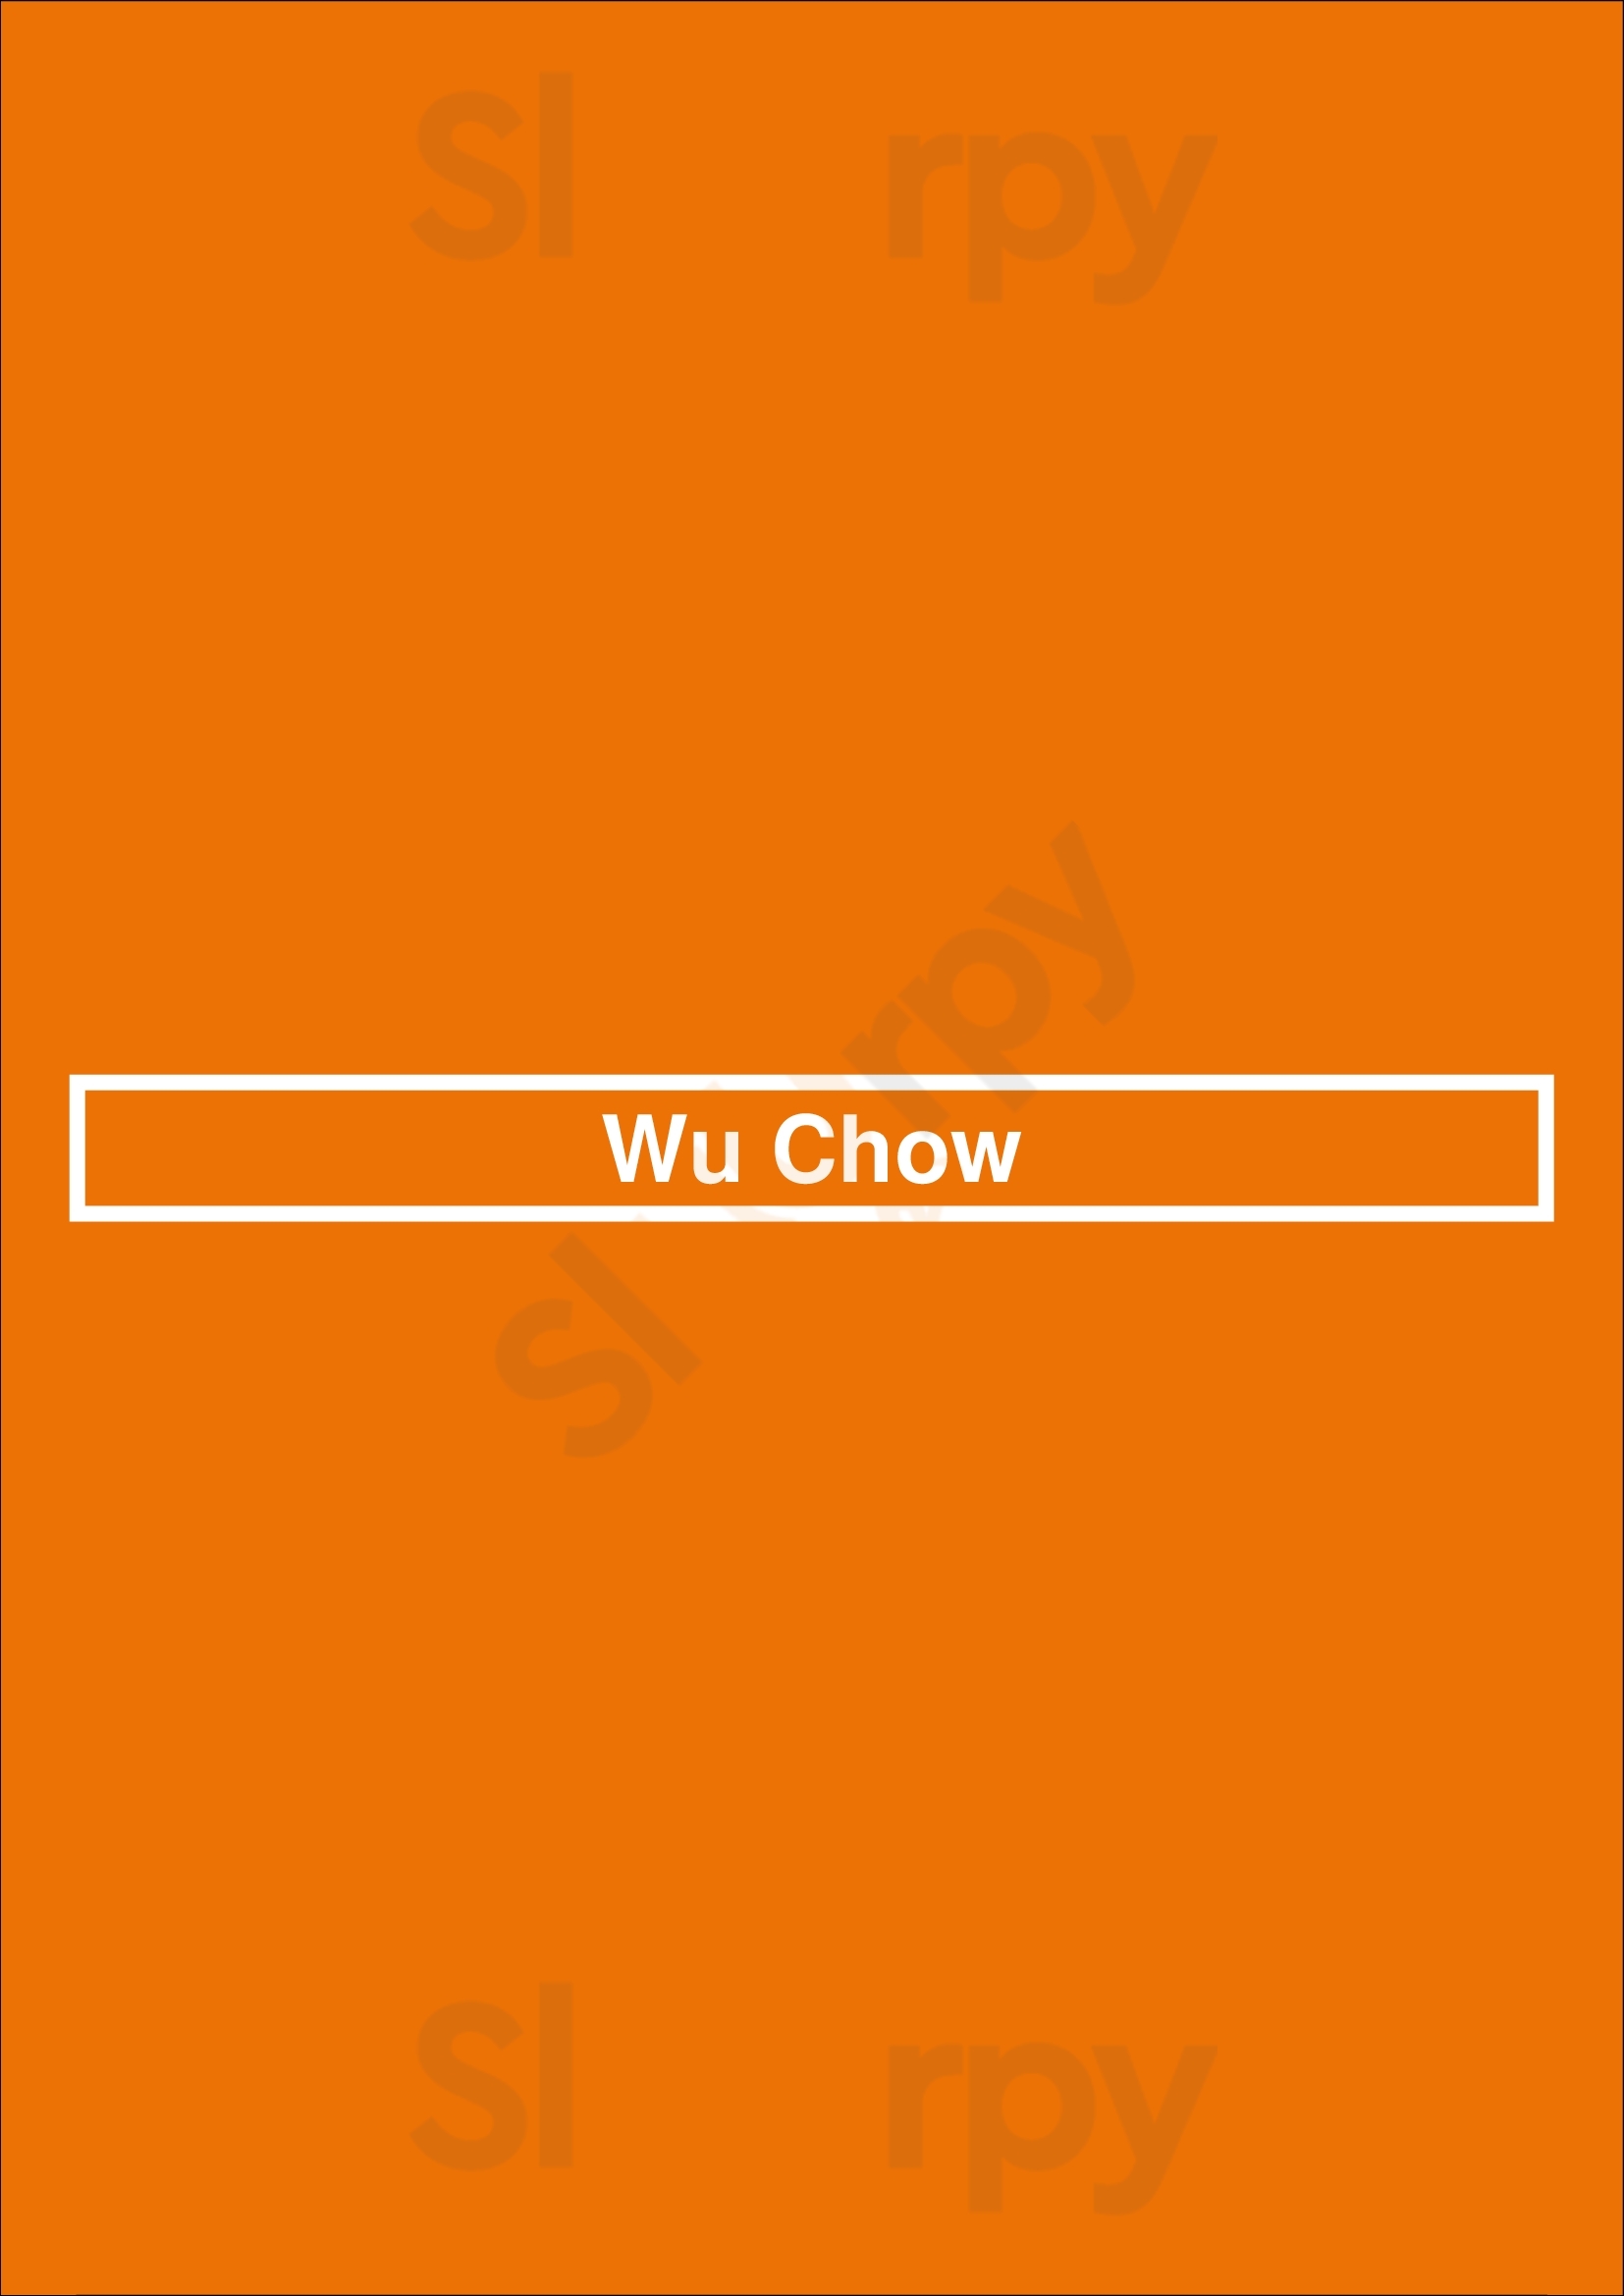 Wu Chow Austin Menu - 1